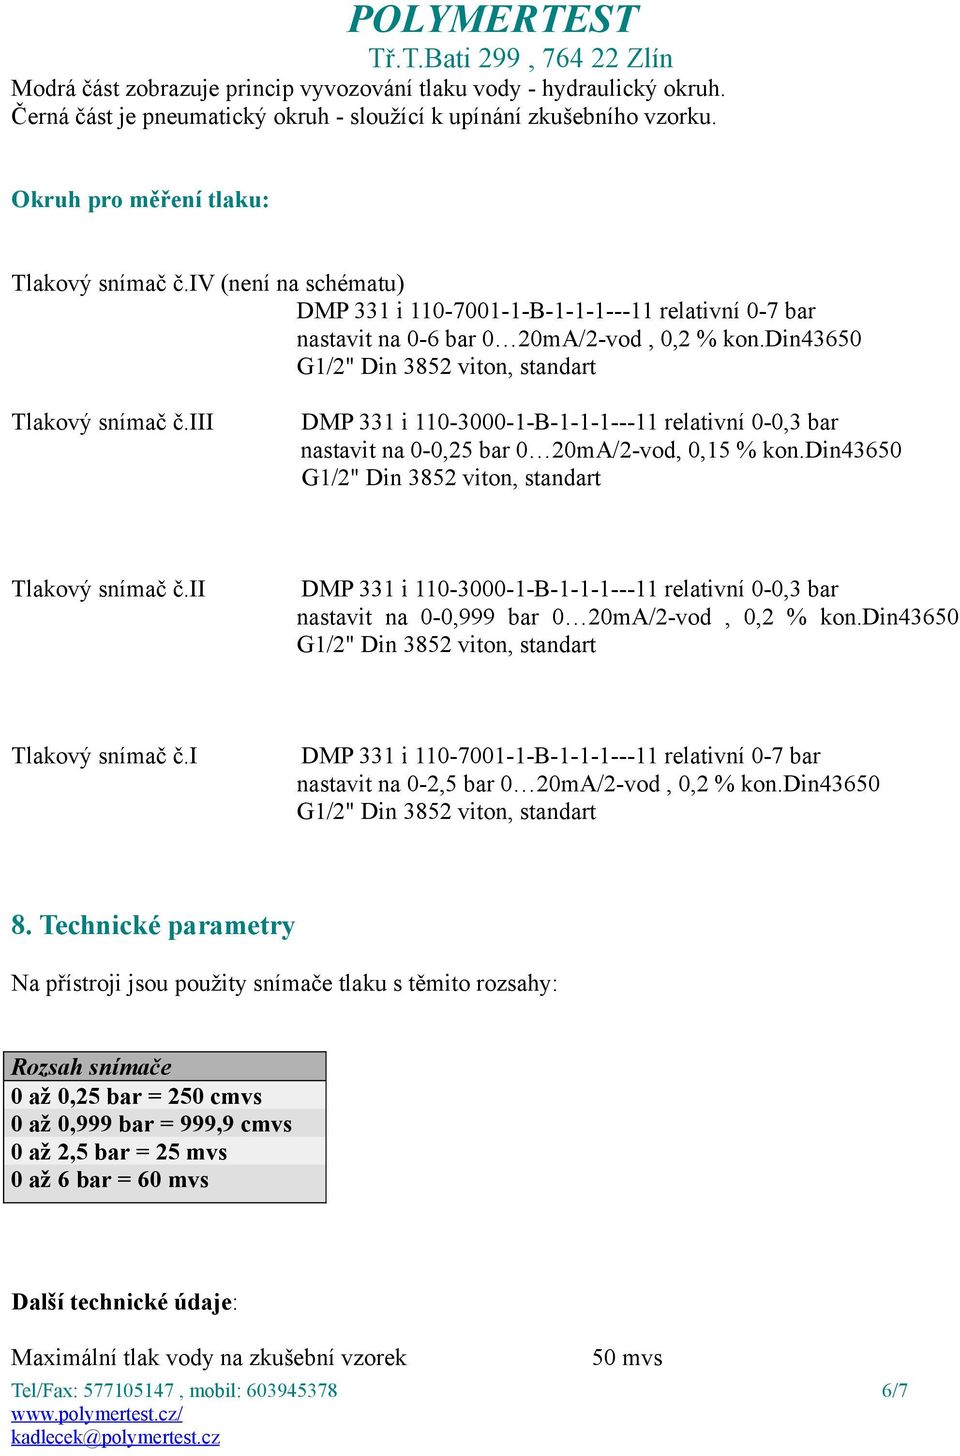 iii DMP 331 i 110-3000-1-B-1-1-1---11 relativní 0-0,3 bar nastavit na 0-0,25 bar 0 20mA/2-vod, 0,15 % kon.din43650 Tlakový snímač č.